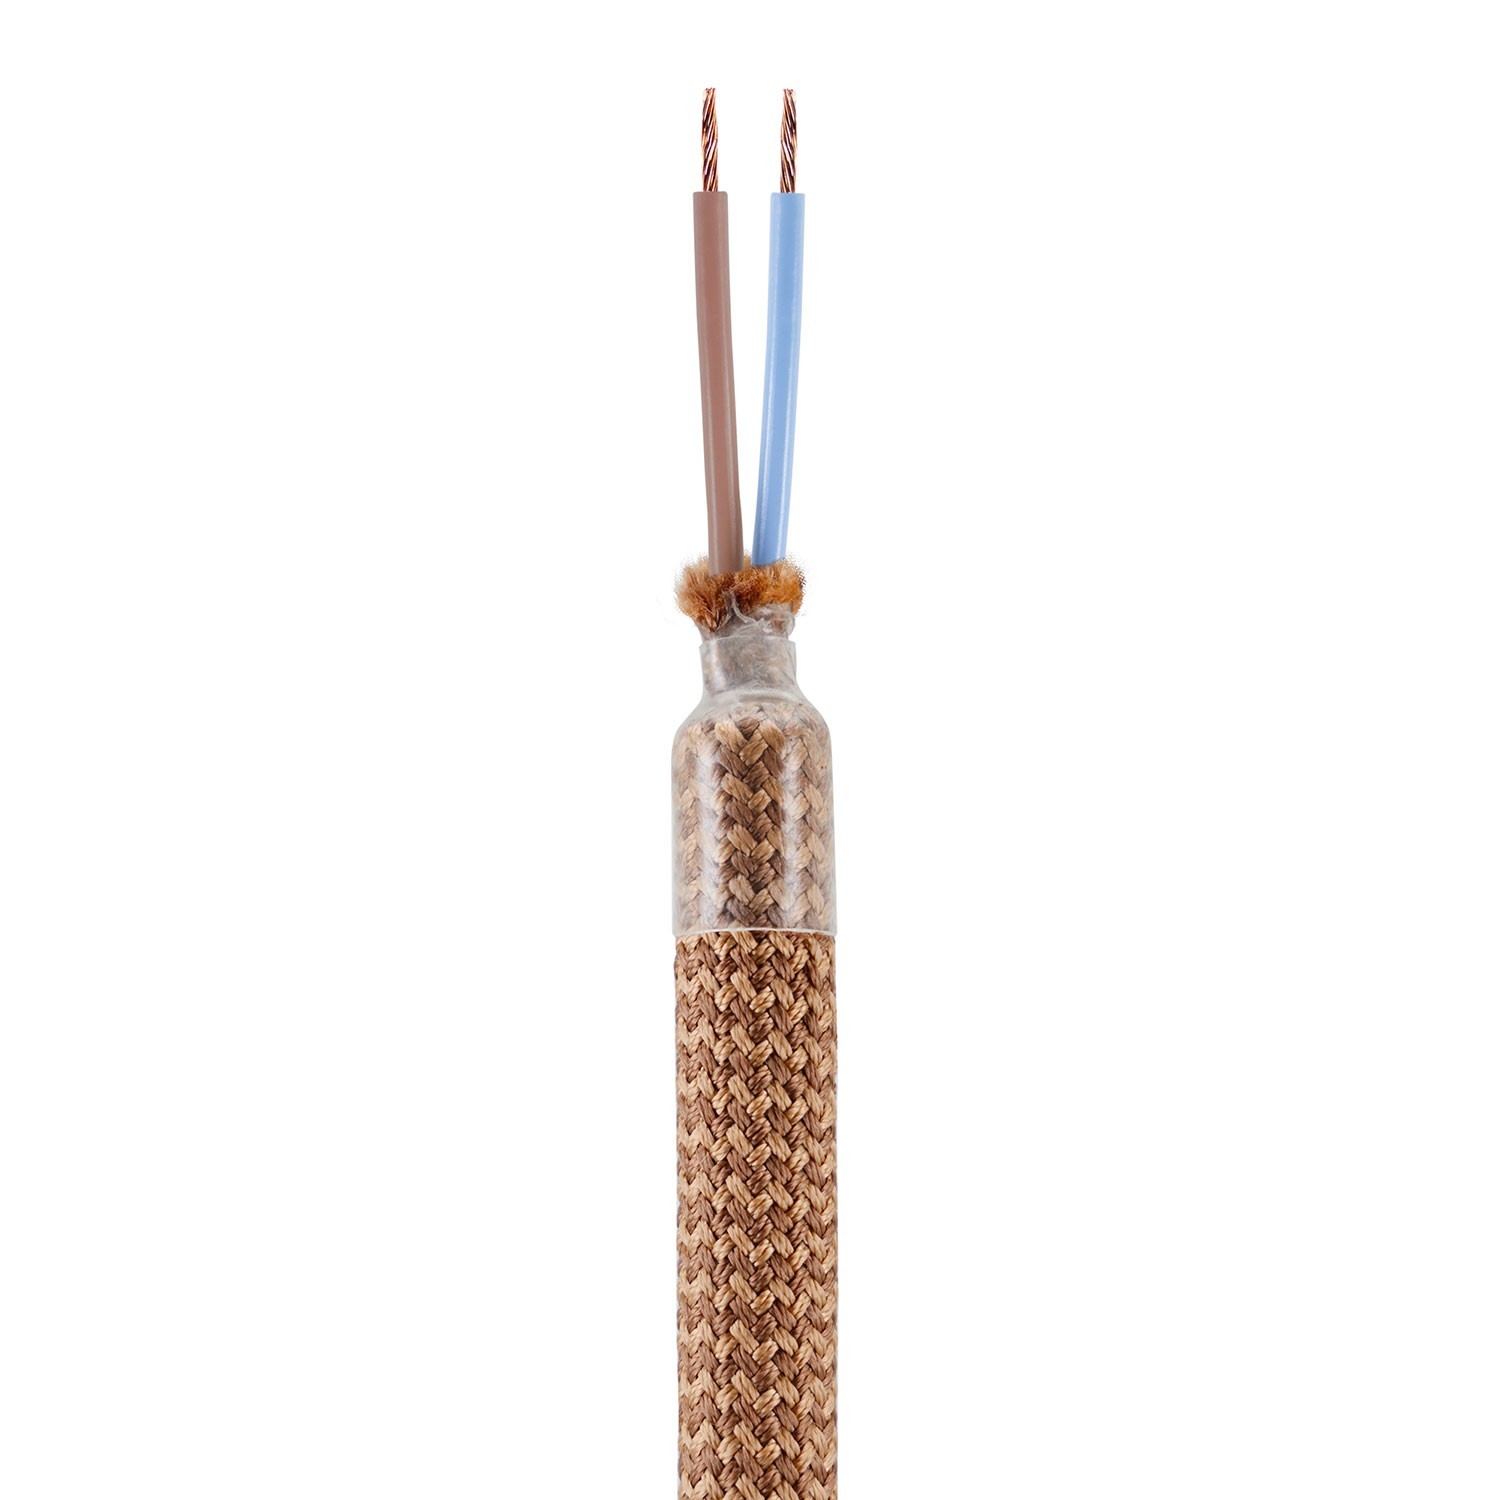 Creative Flex készlet rugalmas csővel, Réz színű RM74 szövet borítással, fém csatlakozókkal